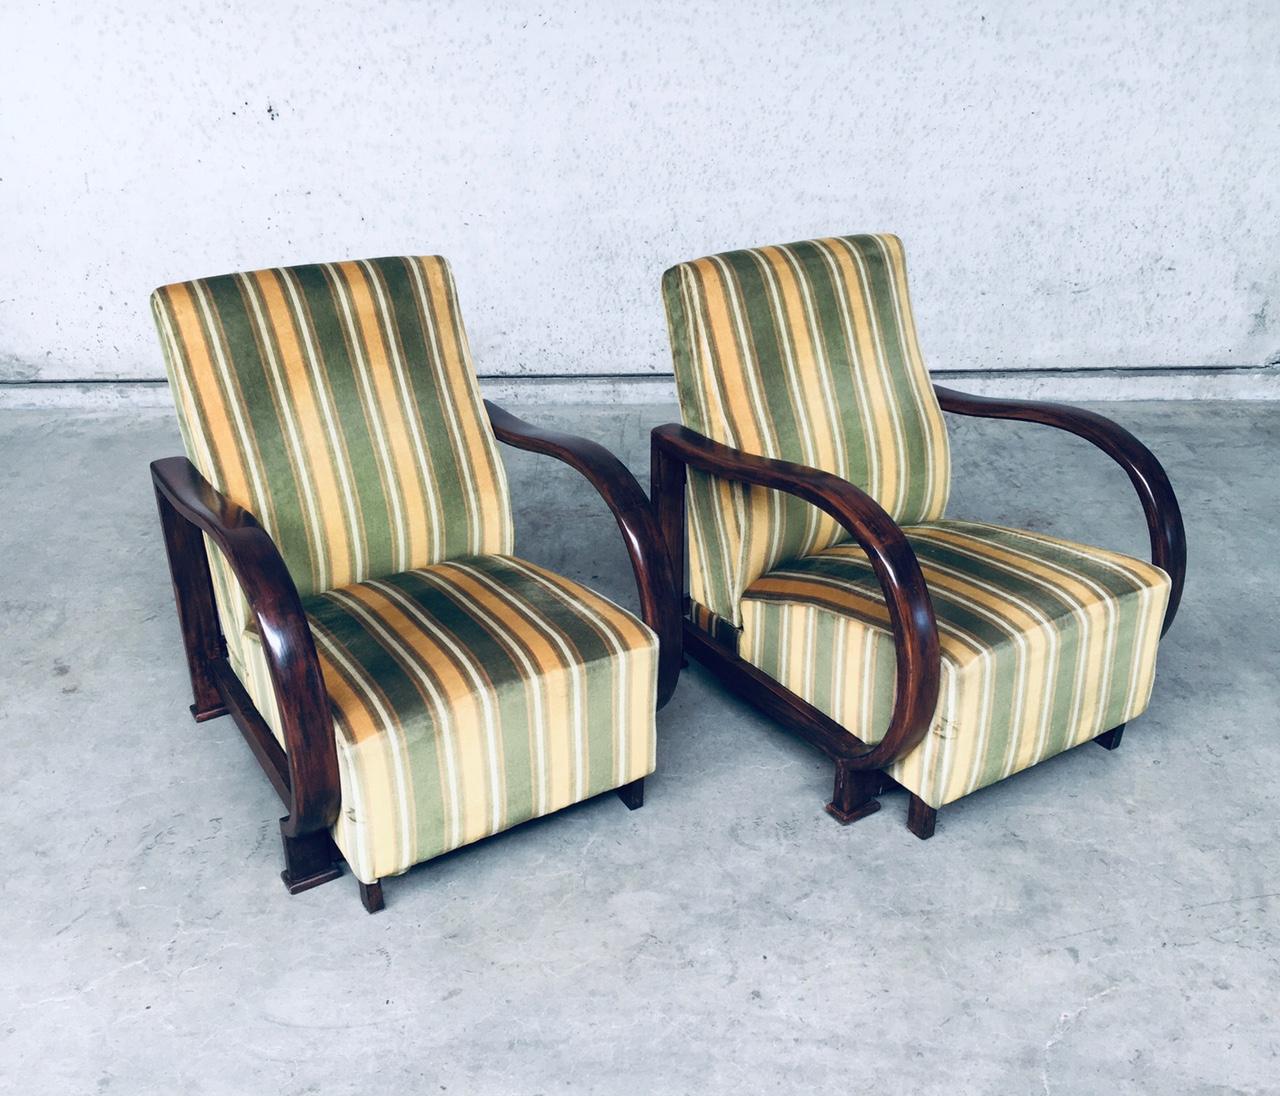 Vintage Art Deco design fauteuil lounge chair set of 2, made in France, 1930's. Ensemble de fauteuils inclinables en bois courbé. Assise et dossier en velours rayé avec accoudoirs et construction de l'assise en aspect noyer courbé. Jolis accoudoirs